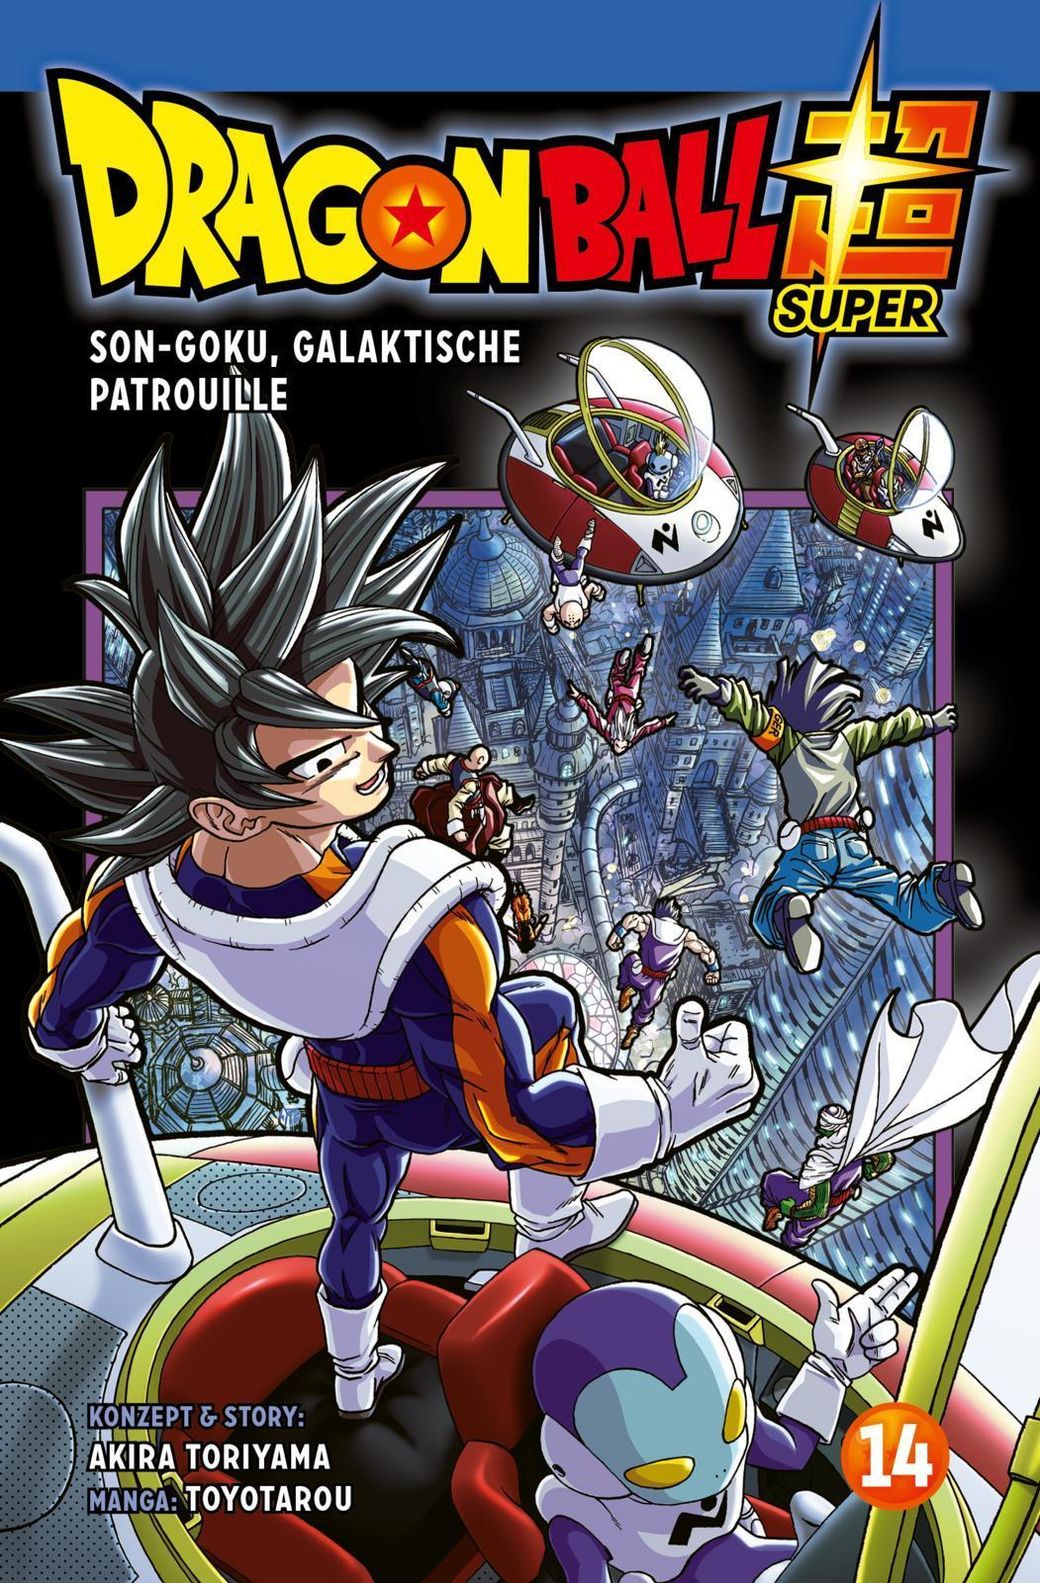 Son-Goku, Galaktische Patrouille Dragon Ball Super Bd.14 Buch